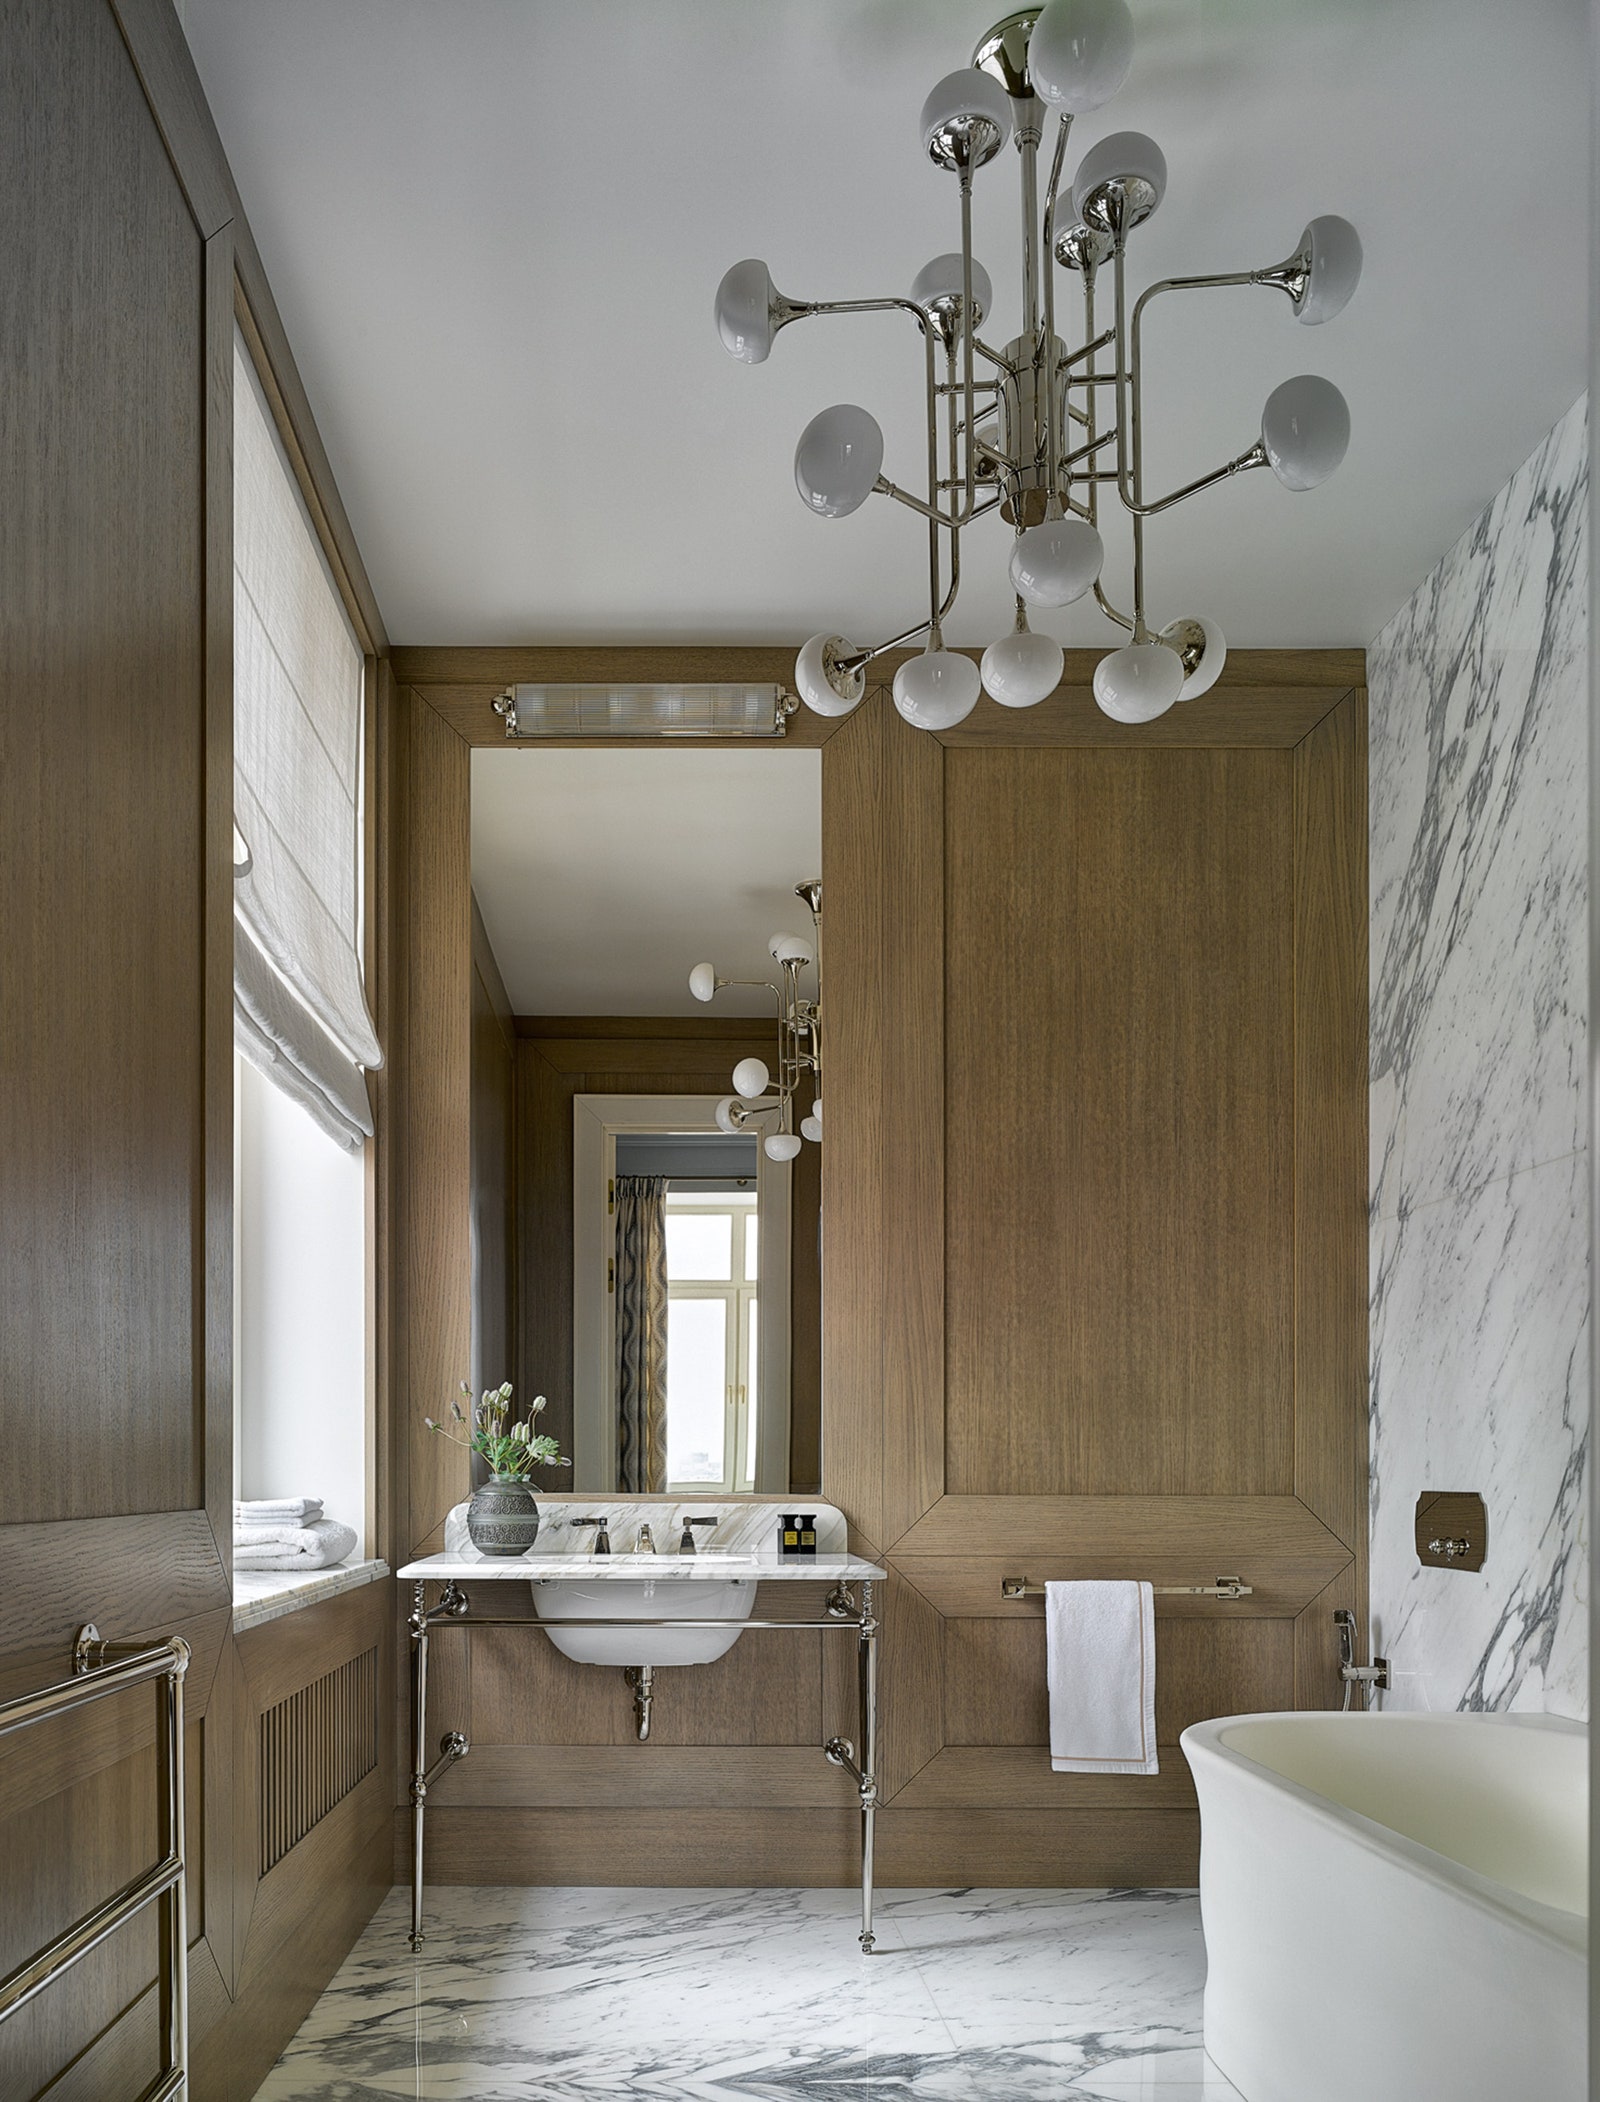 Хозяйская ванная отделана мрамором Calacatta Vagli Antolini деревянные панели сделаны по эскизам дизайнеров Gnoato...